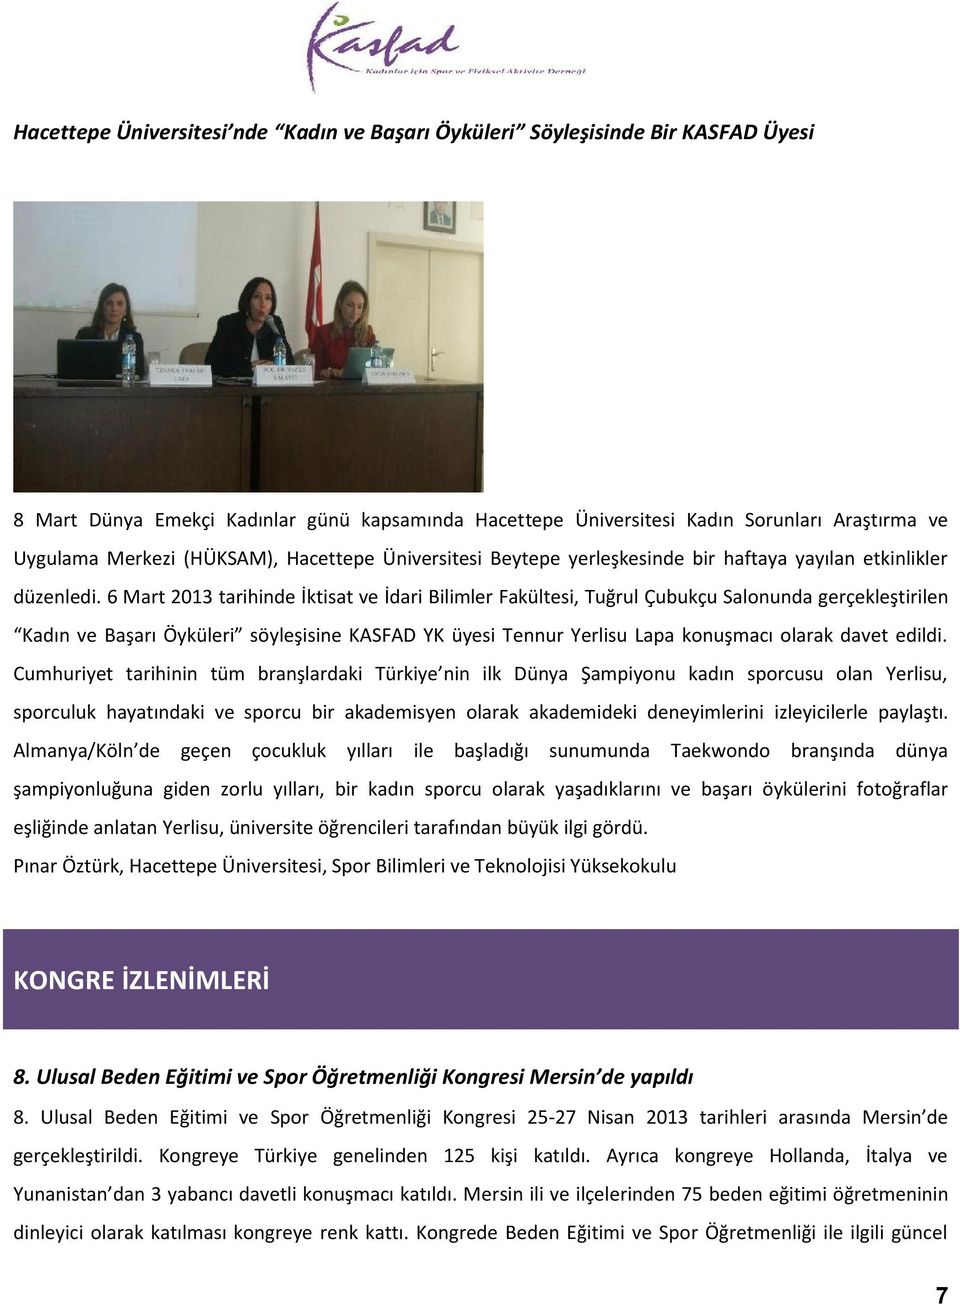 6 Mart 2013 tarihinde İktisat ve İdari Bilimler Fakültesi, Tuğrul Çubukçu Salonunda gerçekleştirilen Kadın ve Başarı Öyküleri söyleşisine KASFAD YK üyesi Tennur Yerlisu Lapa konuşmacı olarak davet